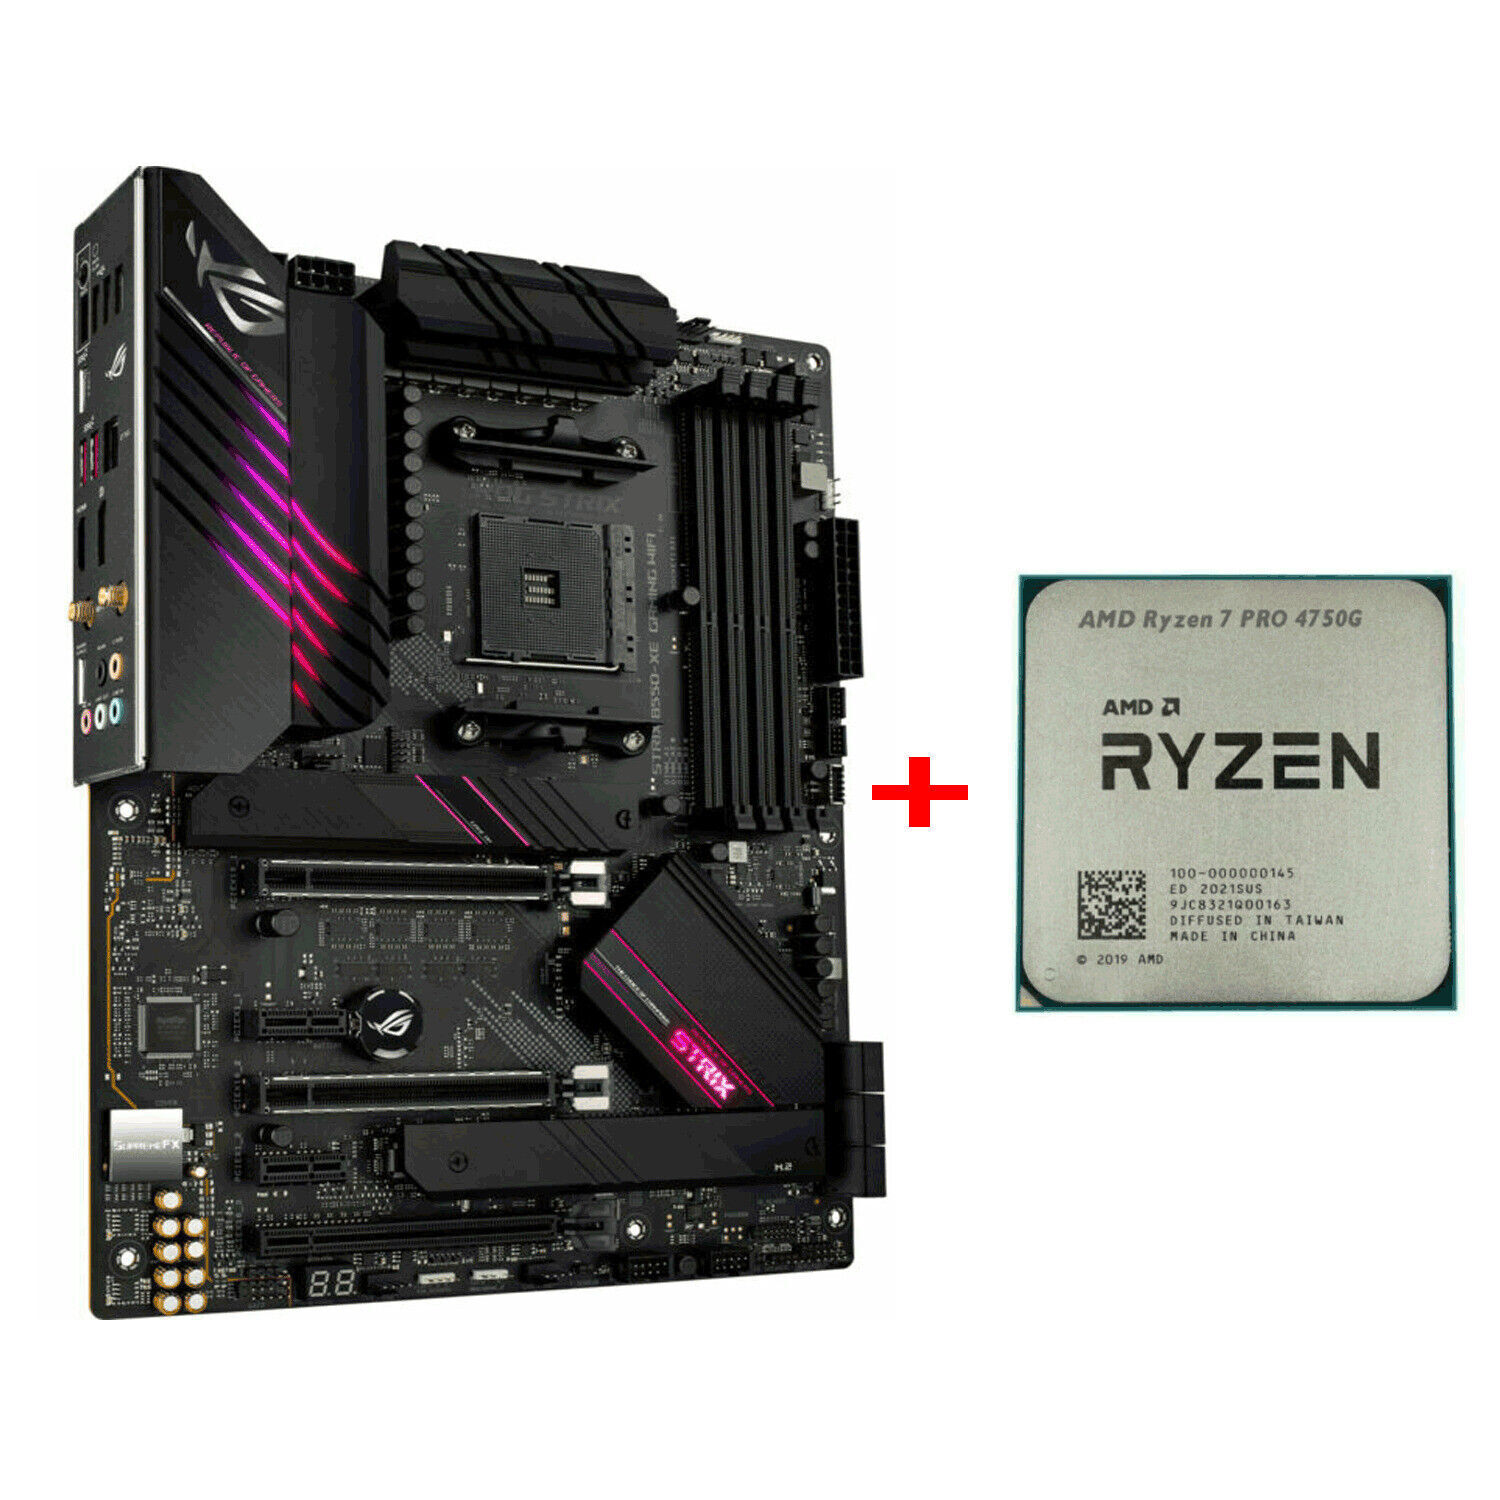 AMD Ryzen 7 Pro 4750G 3.6GHz CPU + ASUS ROG STRIX B550-XE GAMING WIFI Mainboard